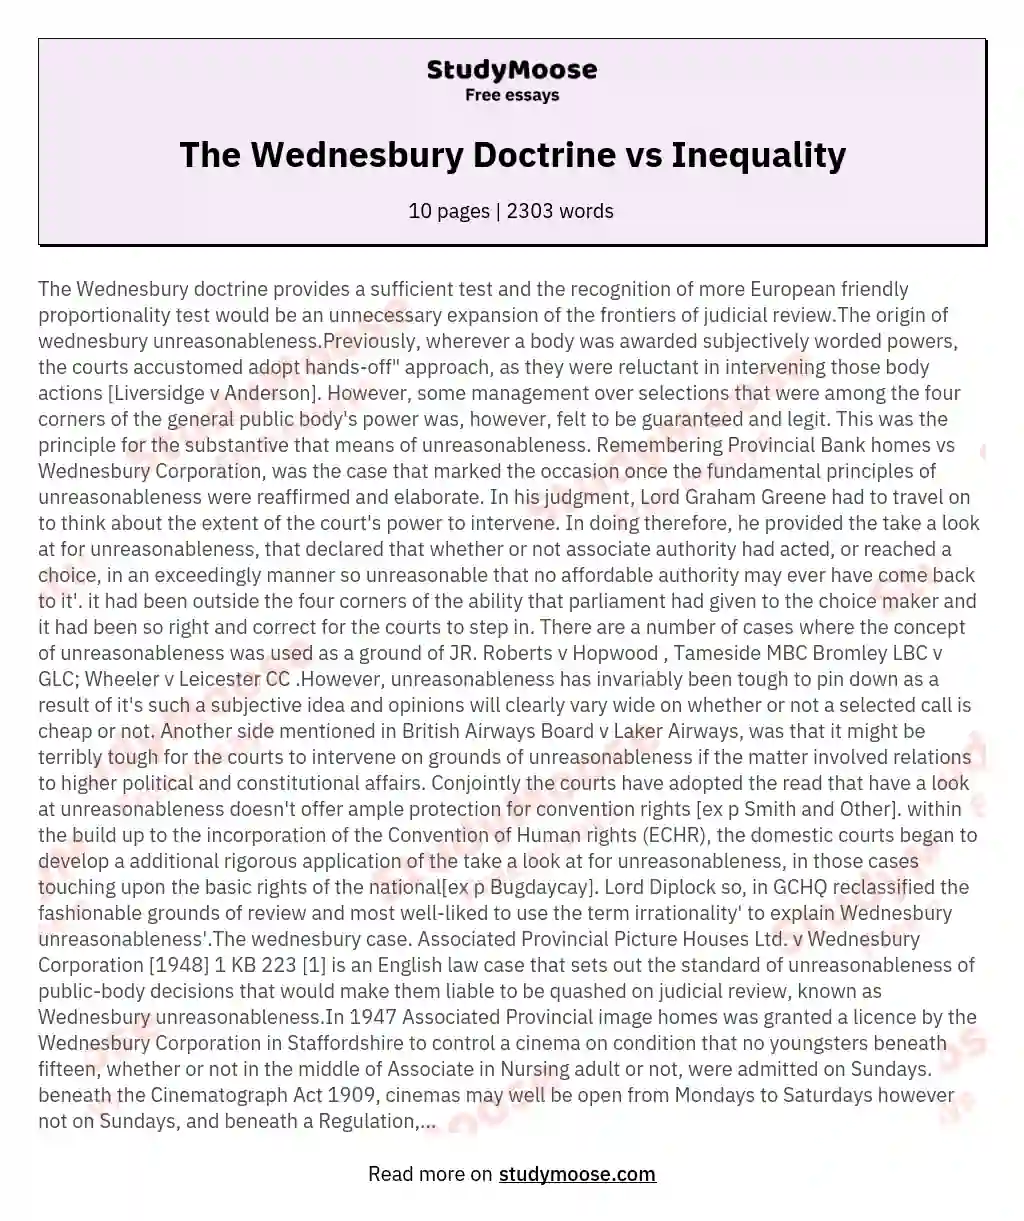 The Wednesbury Doctrine vs Inequality essay